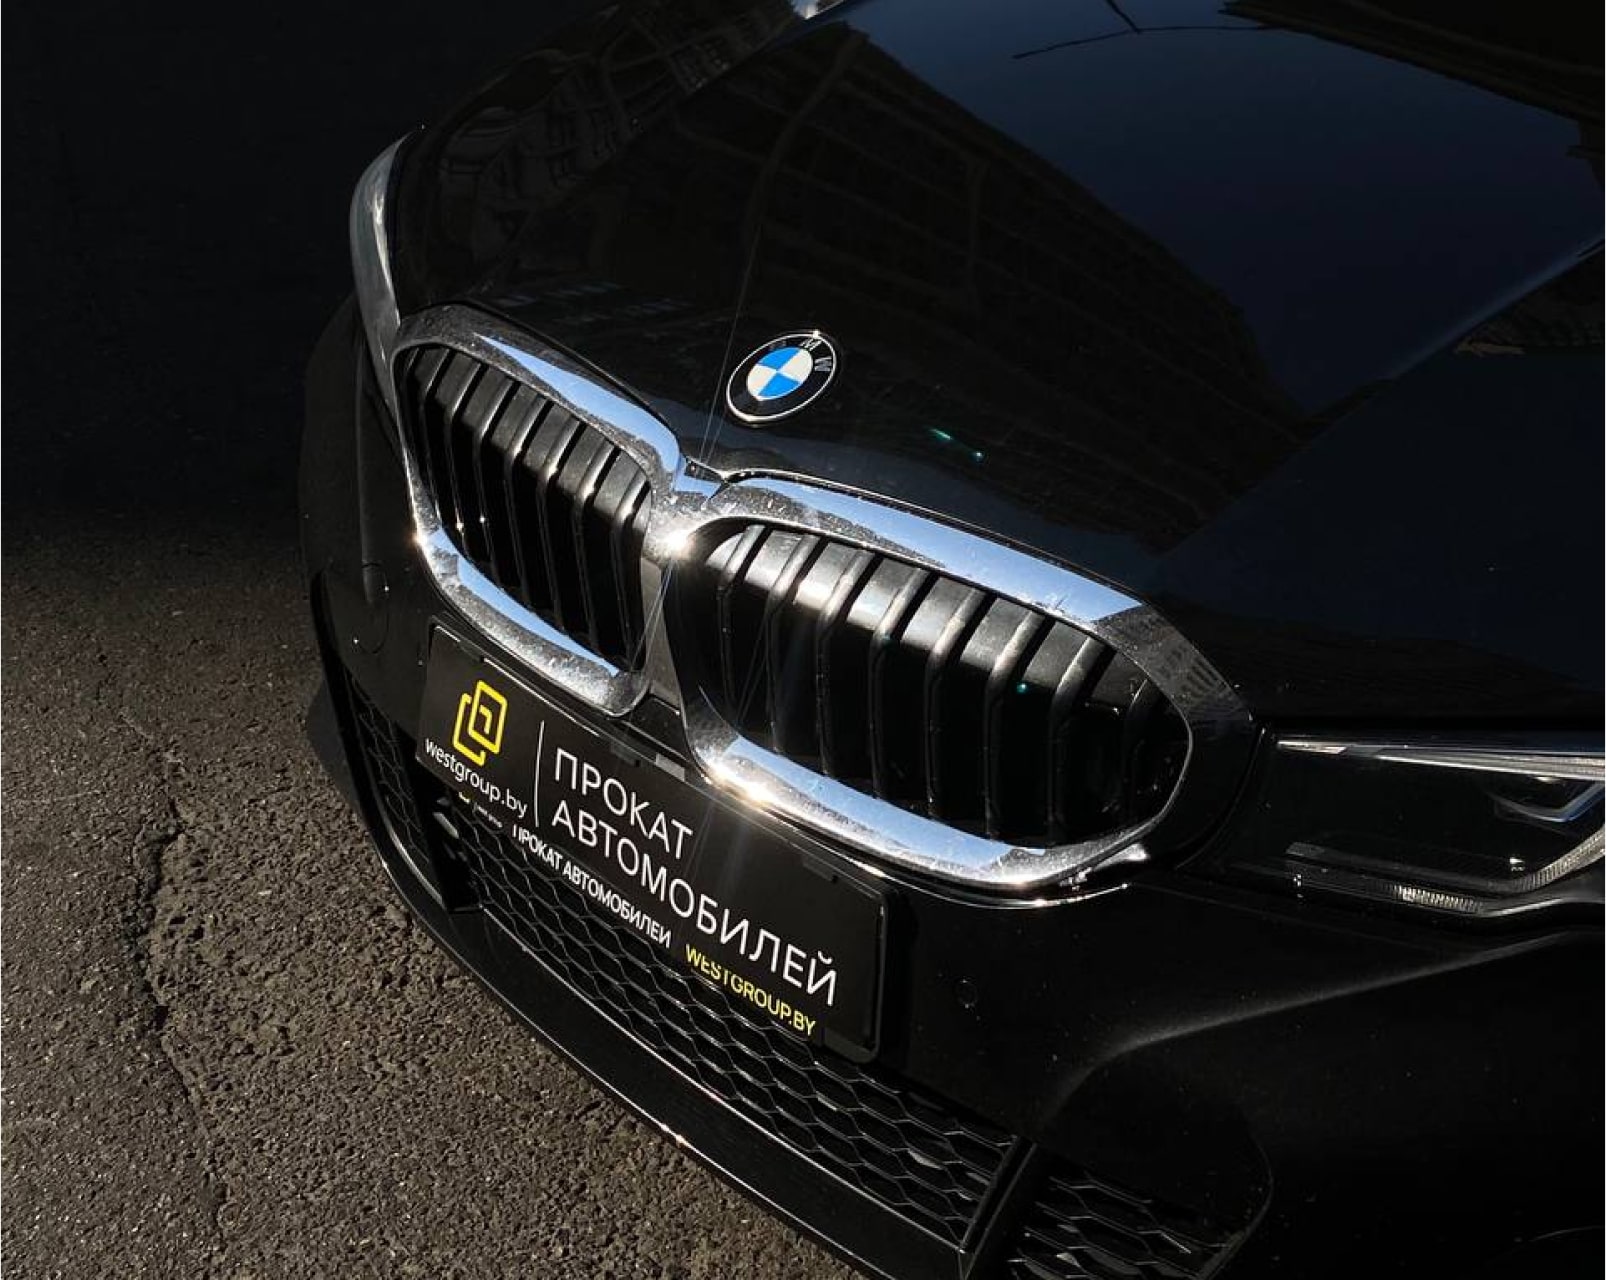 Аренда  BMW 320d G20 M-sport  3 класса 2019 года в городе Минск от 84 $/сутки,  двигатель: Бензин , объем 2.0 литров, КАСКО (Мультидрайв), без водителя, вид 3 - West Group